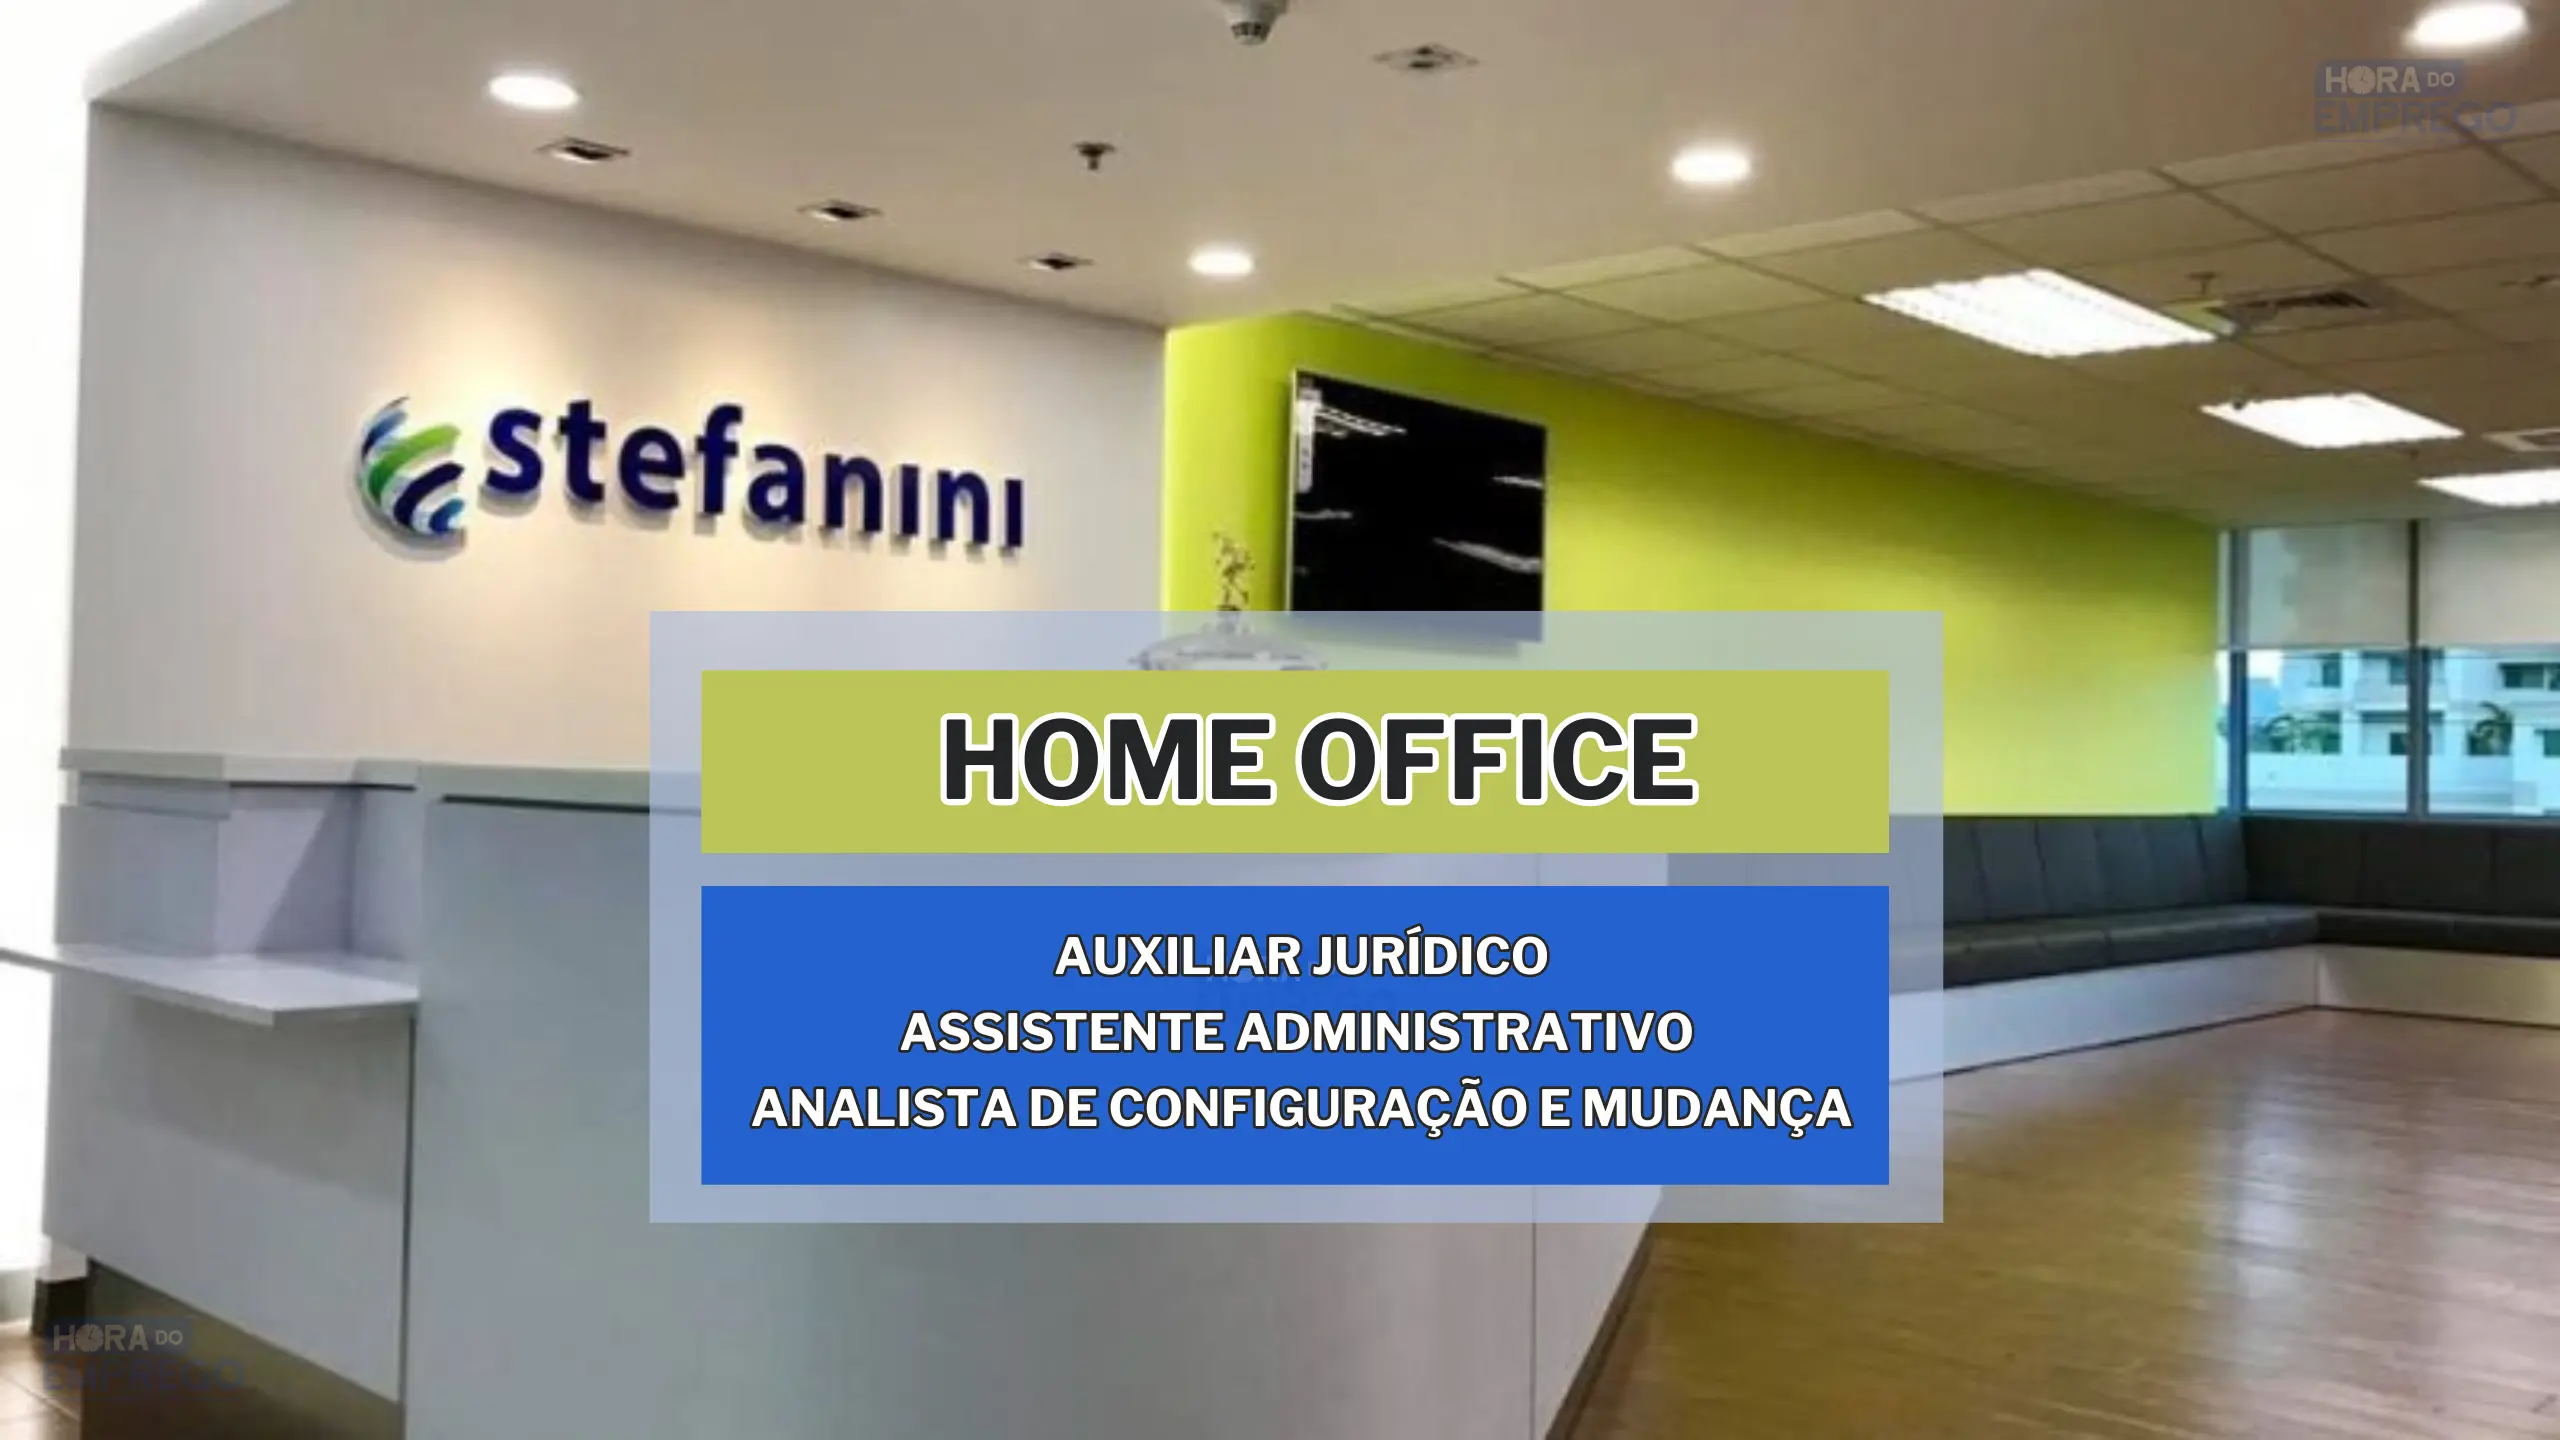 Trabalhe de Casa: Stefanini abre vagas 100% HOME OFFICE para Auxiliar Jurídico, Assistente Administrativo e Analista de Configuração e Mudança